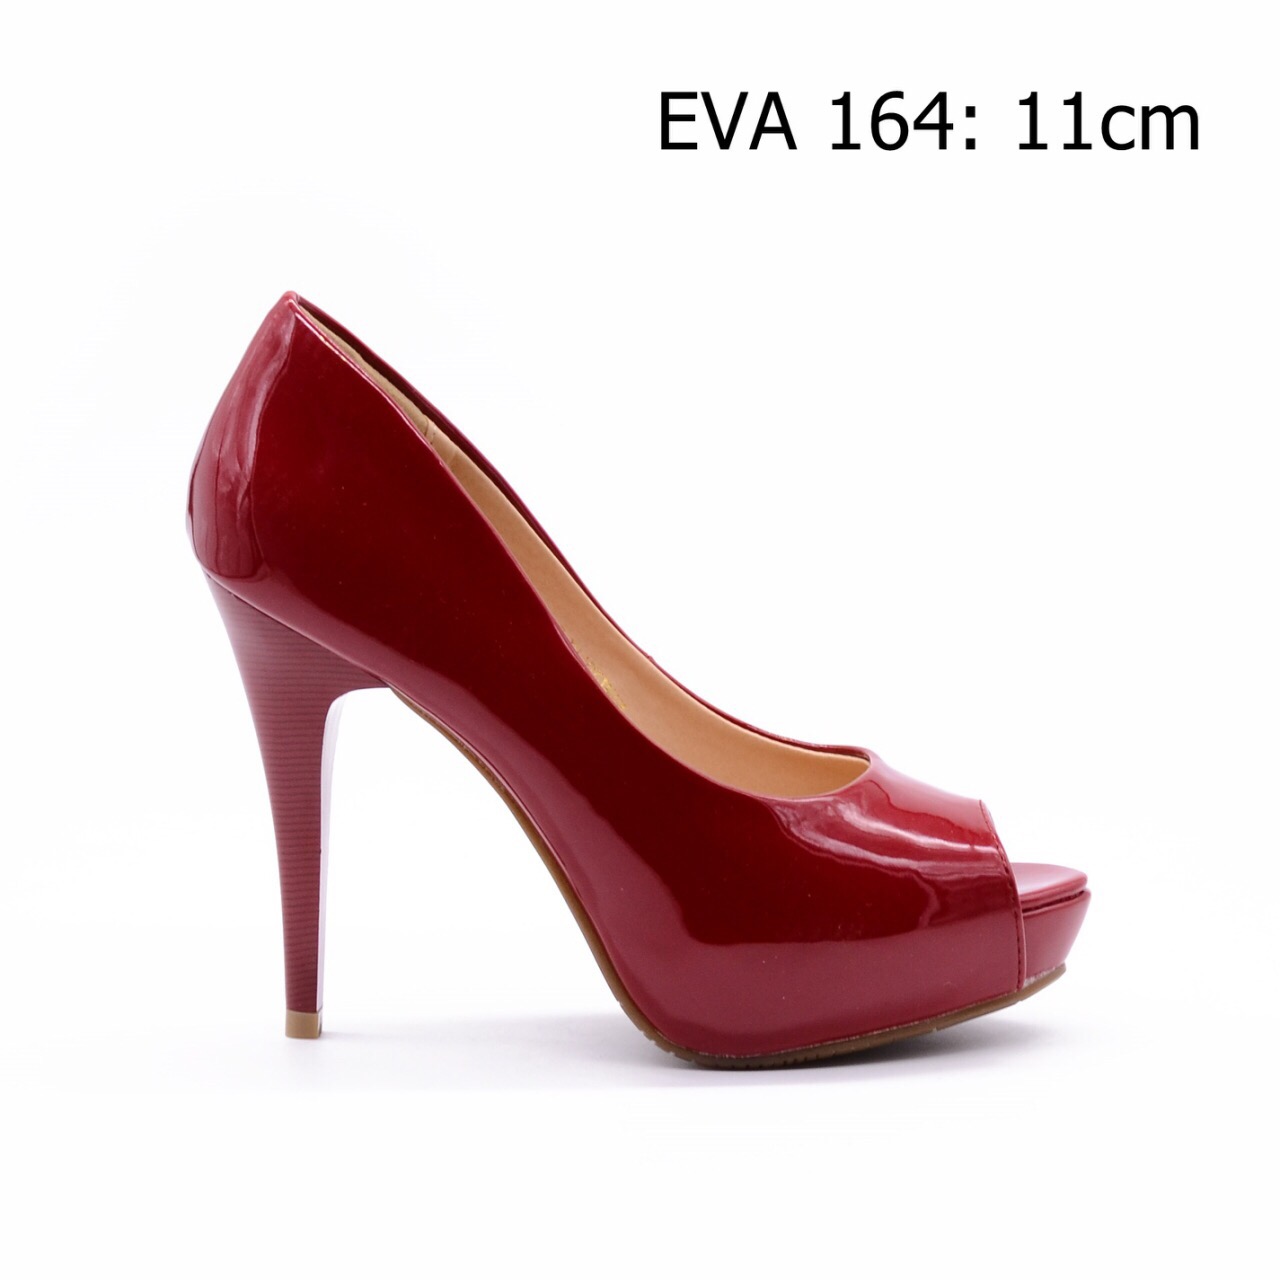 Giày hở mũi EVA164 cao 11cm chất liệu da bóng mềm mại, quý phái.